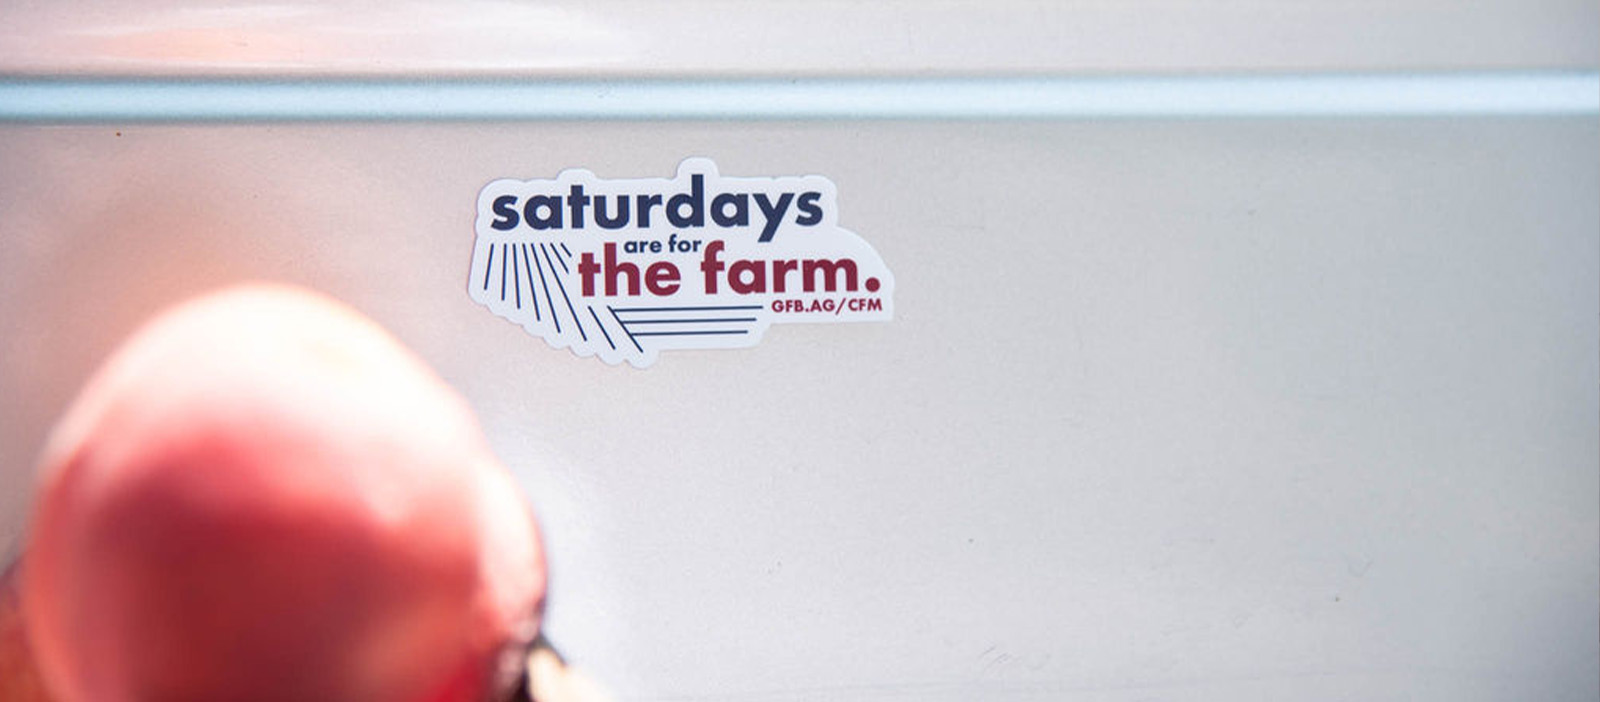 Saturdays are for the farm 